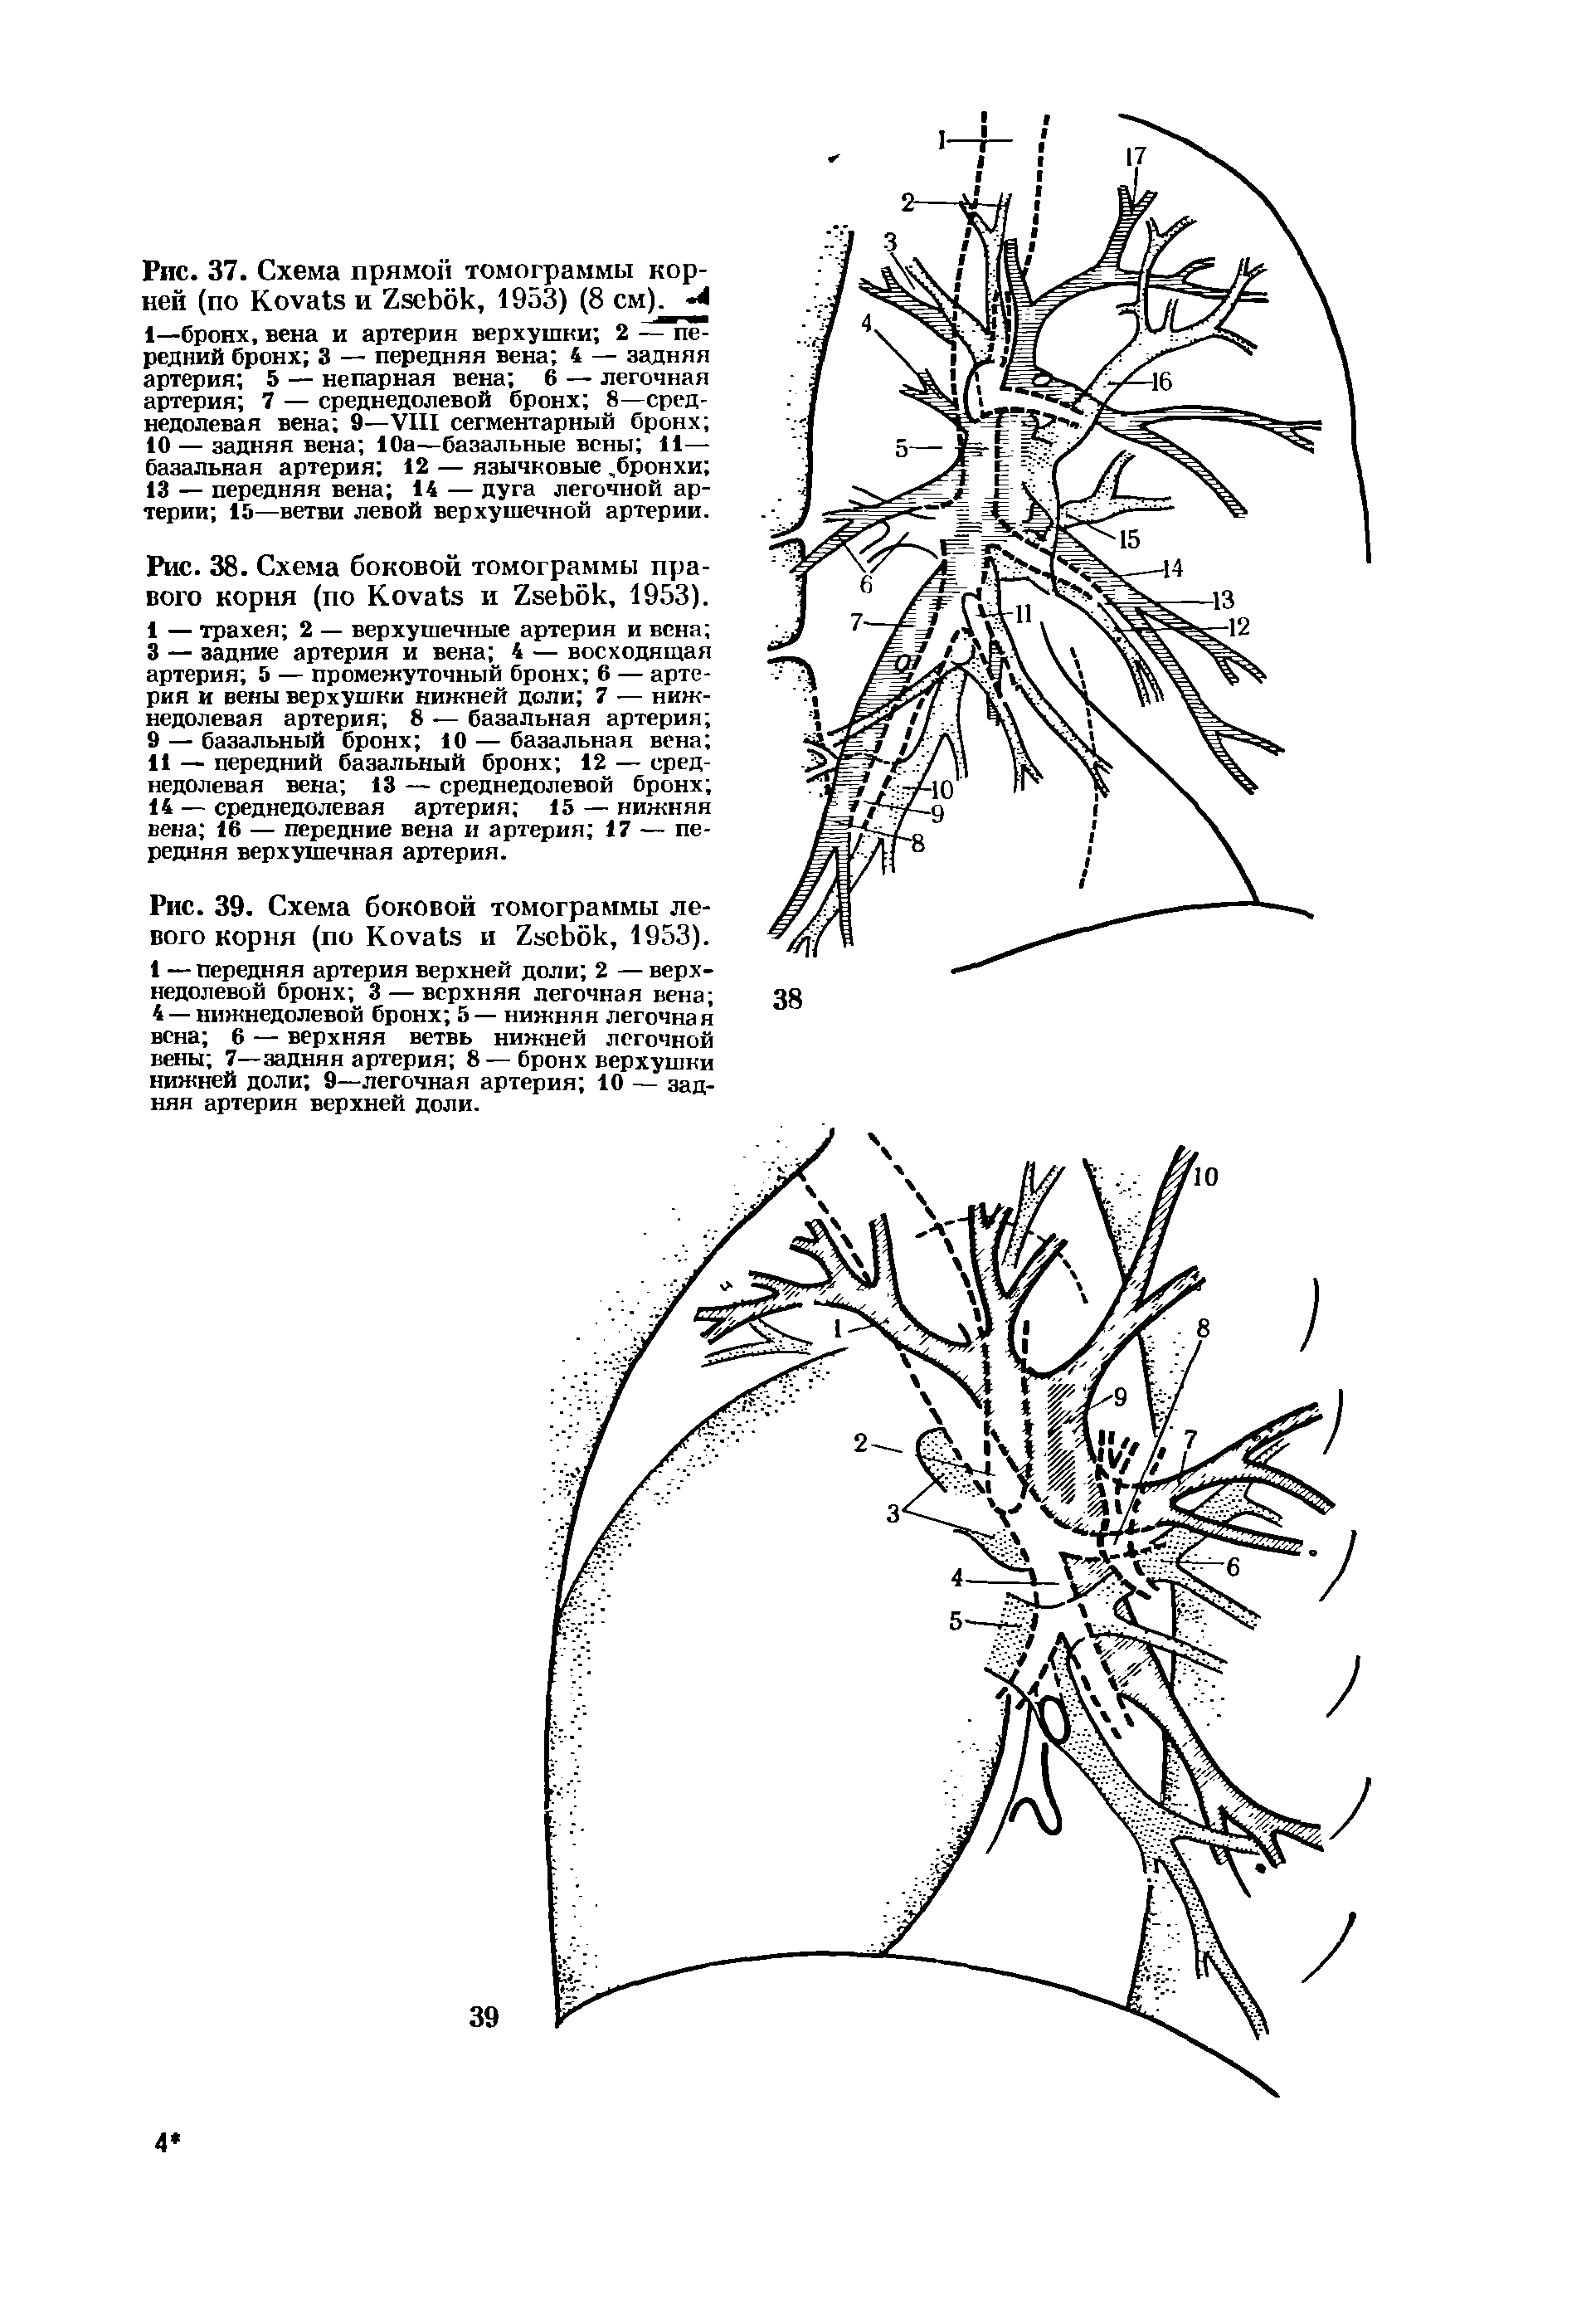 Рис. 39. Схема боковой томограммы левого корня (по K и Z , 1953). 1 — передняя артерия верхней доли 2 — верхнедолевой бронх 3 — верхняя легочная вена ...